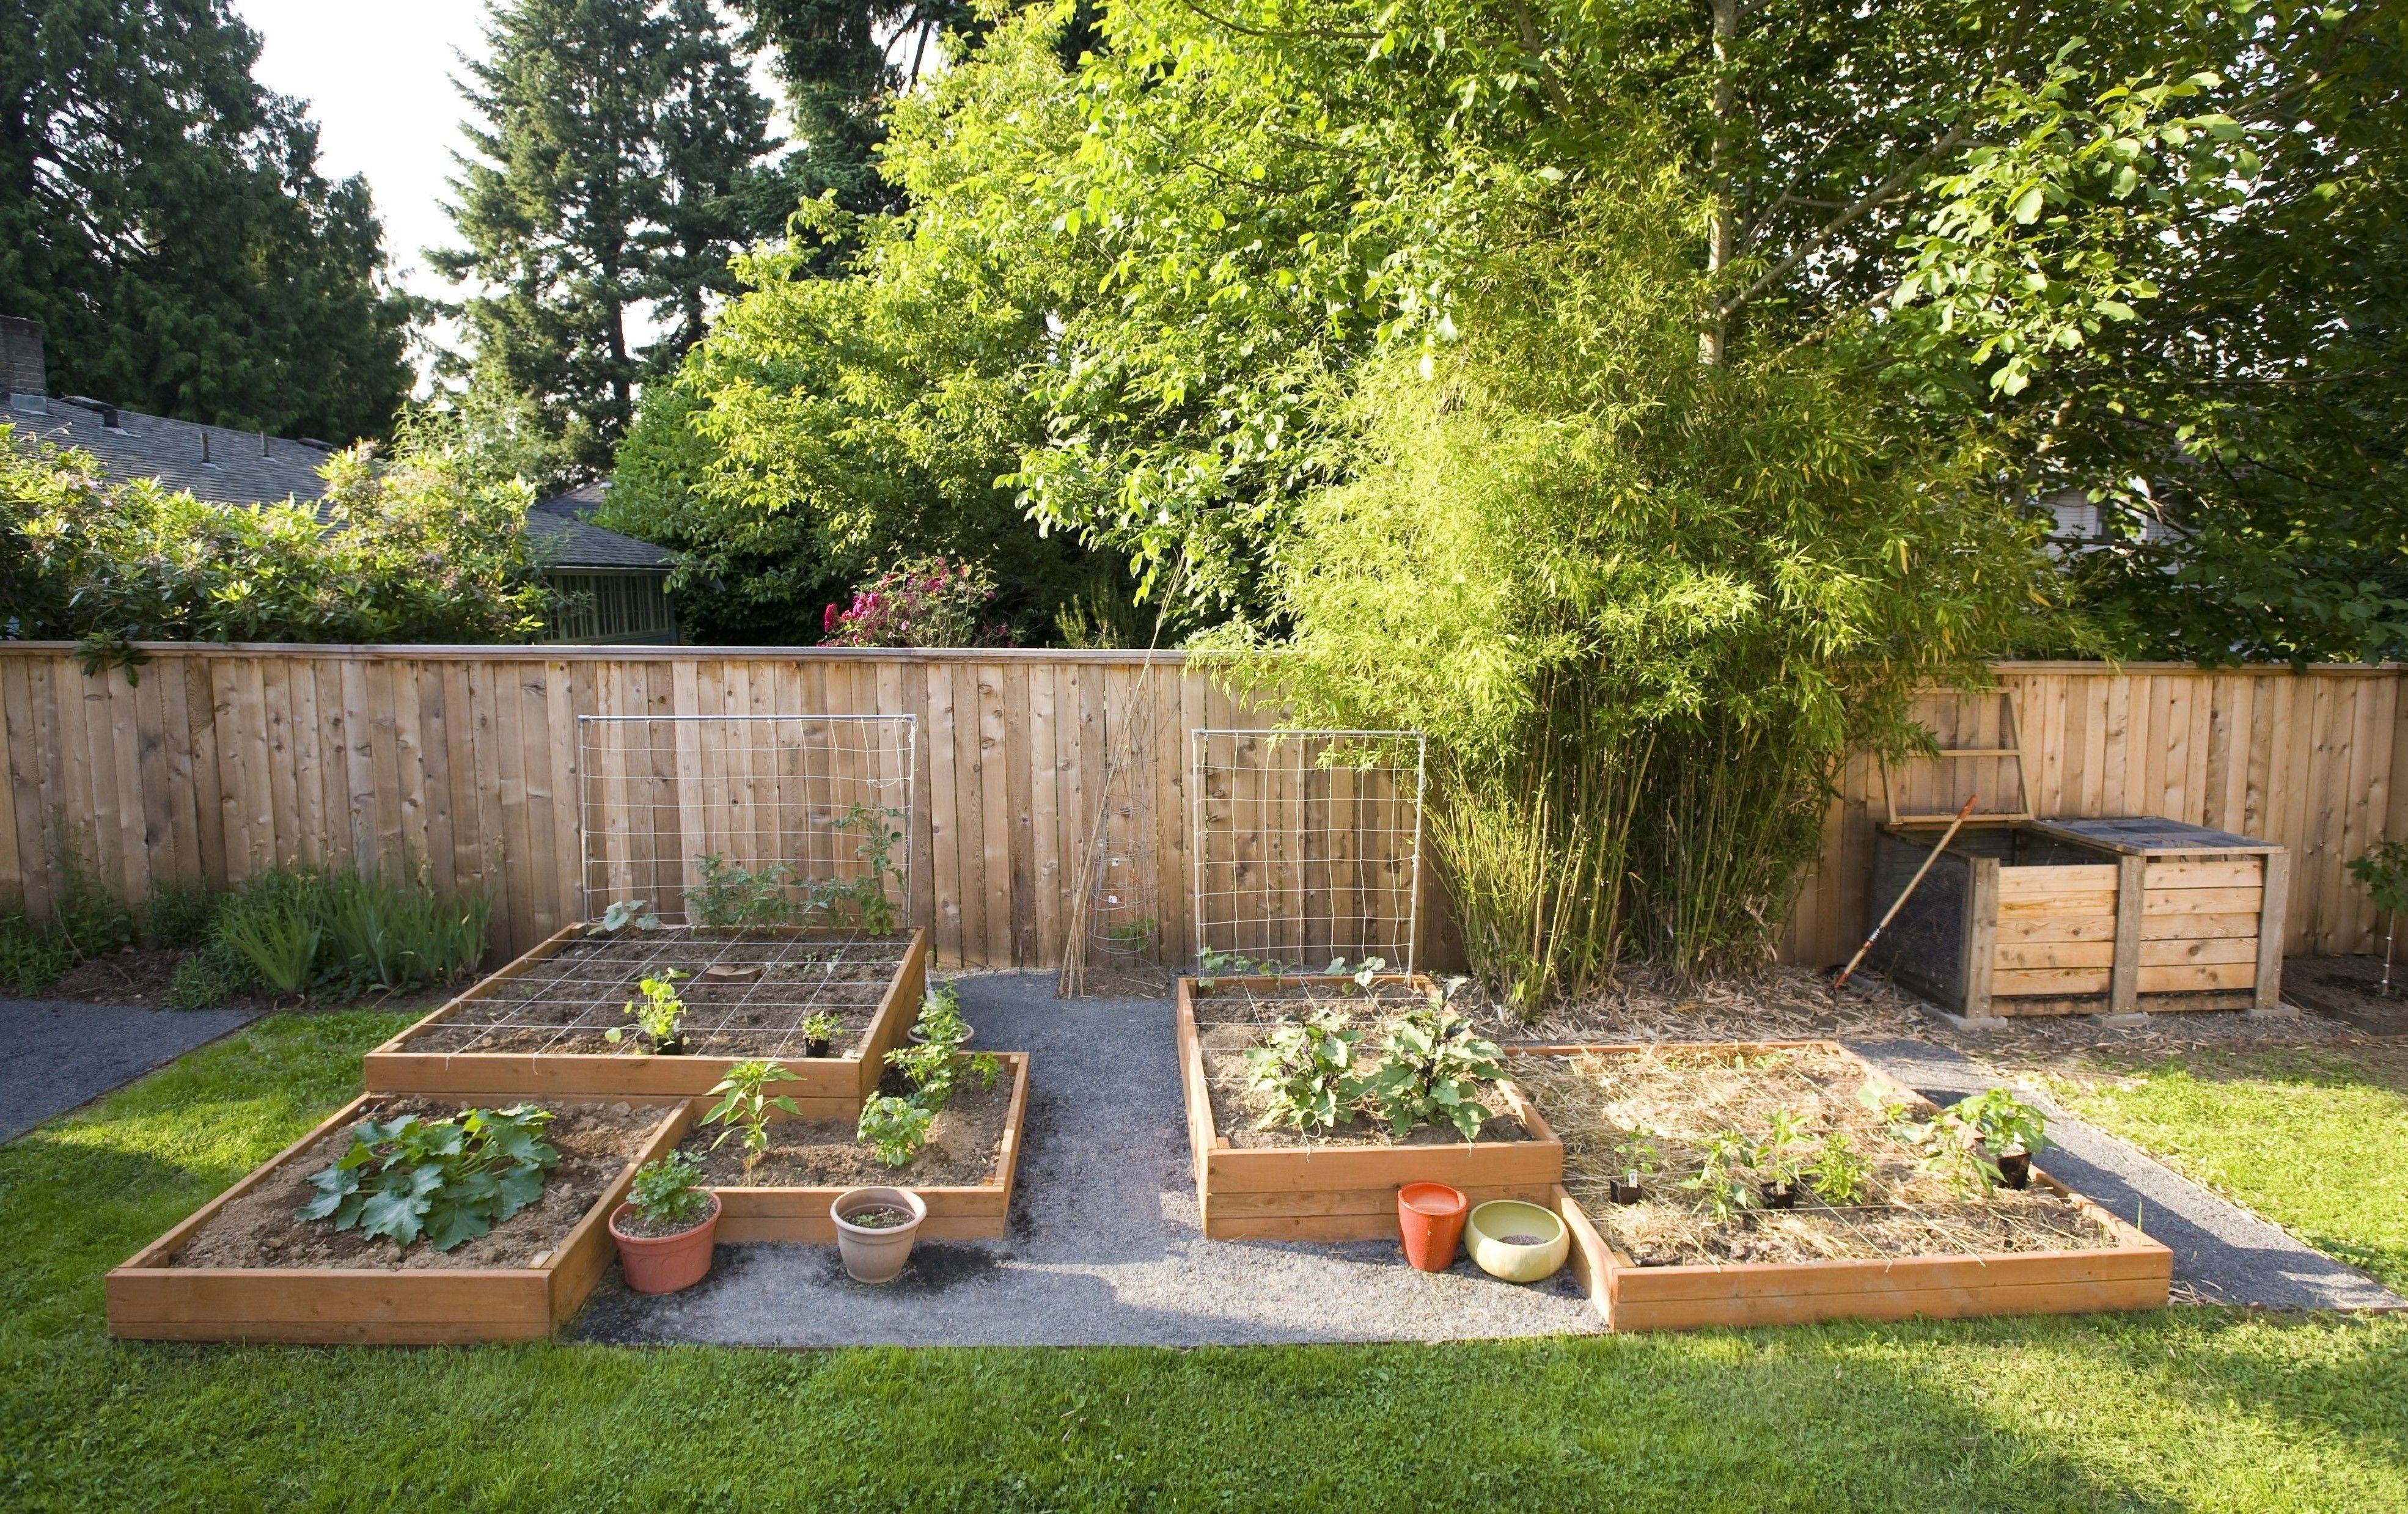 Easy Vegetable Home Gardening Ideas